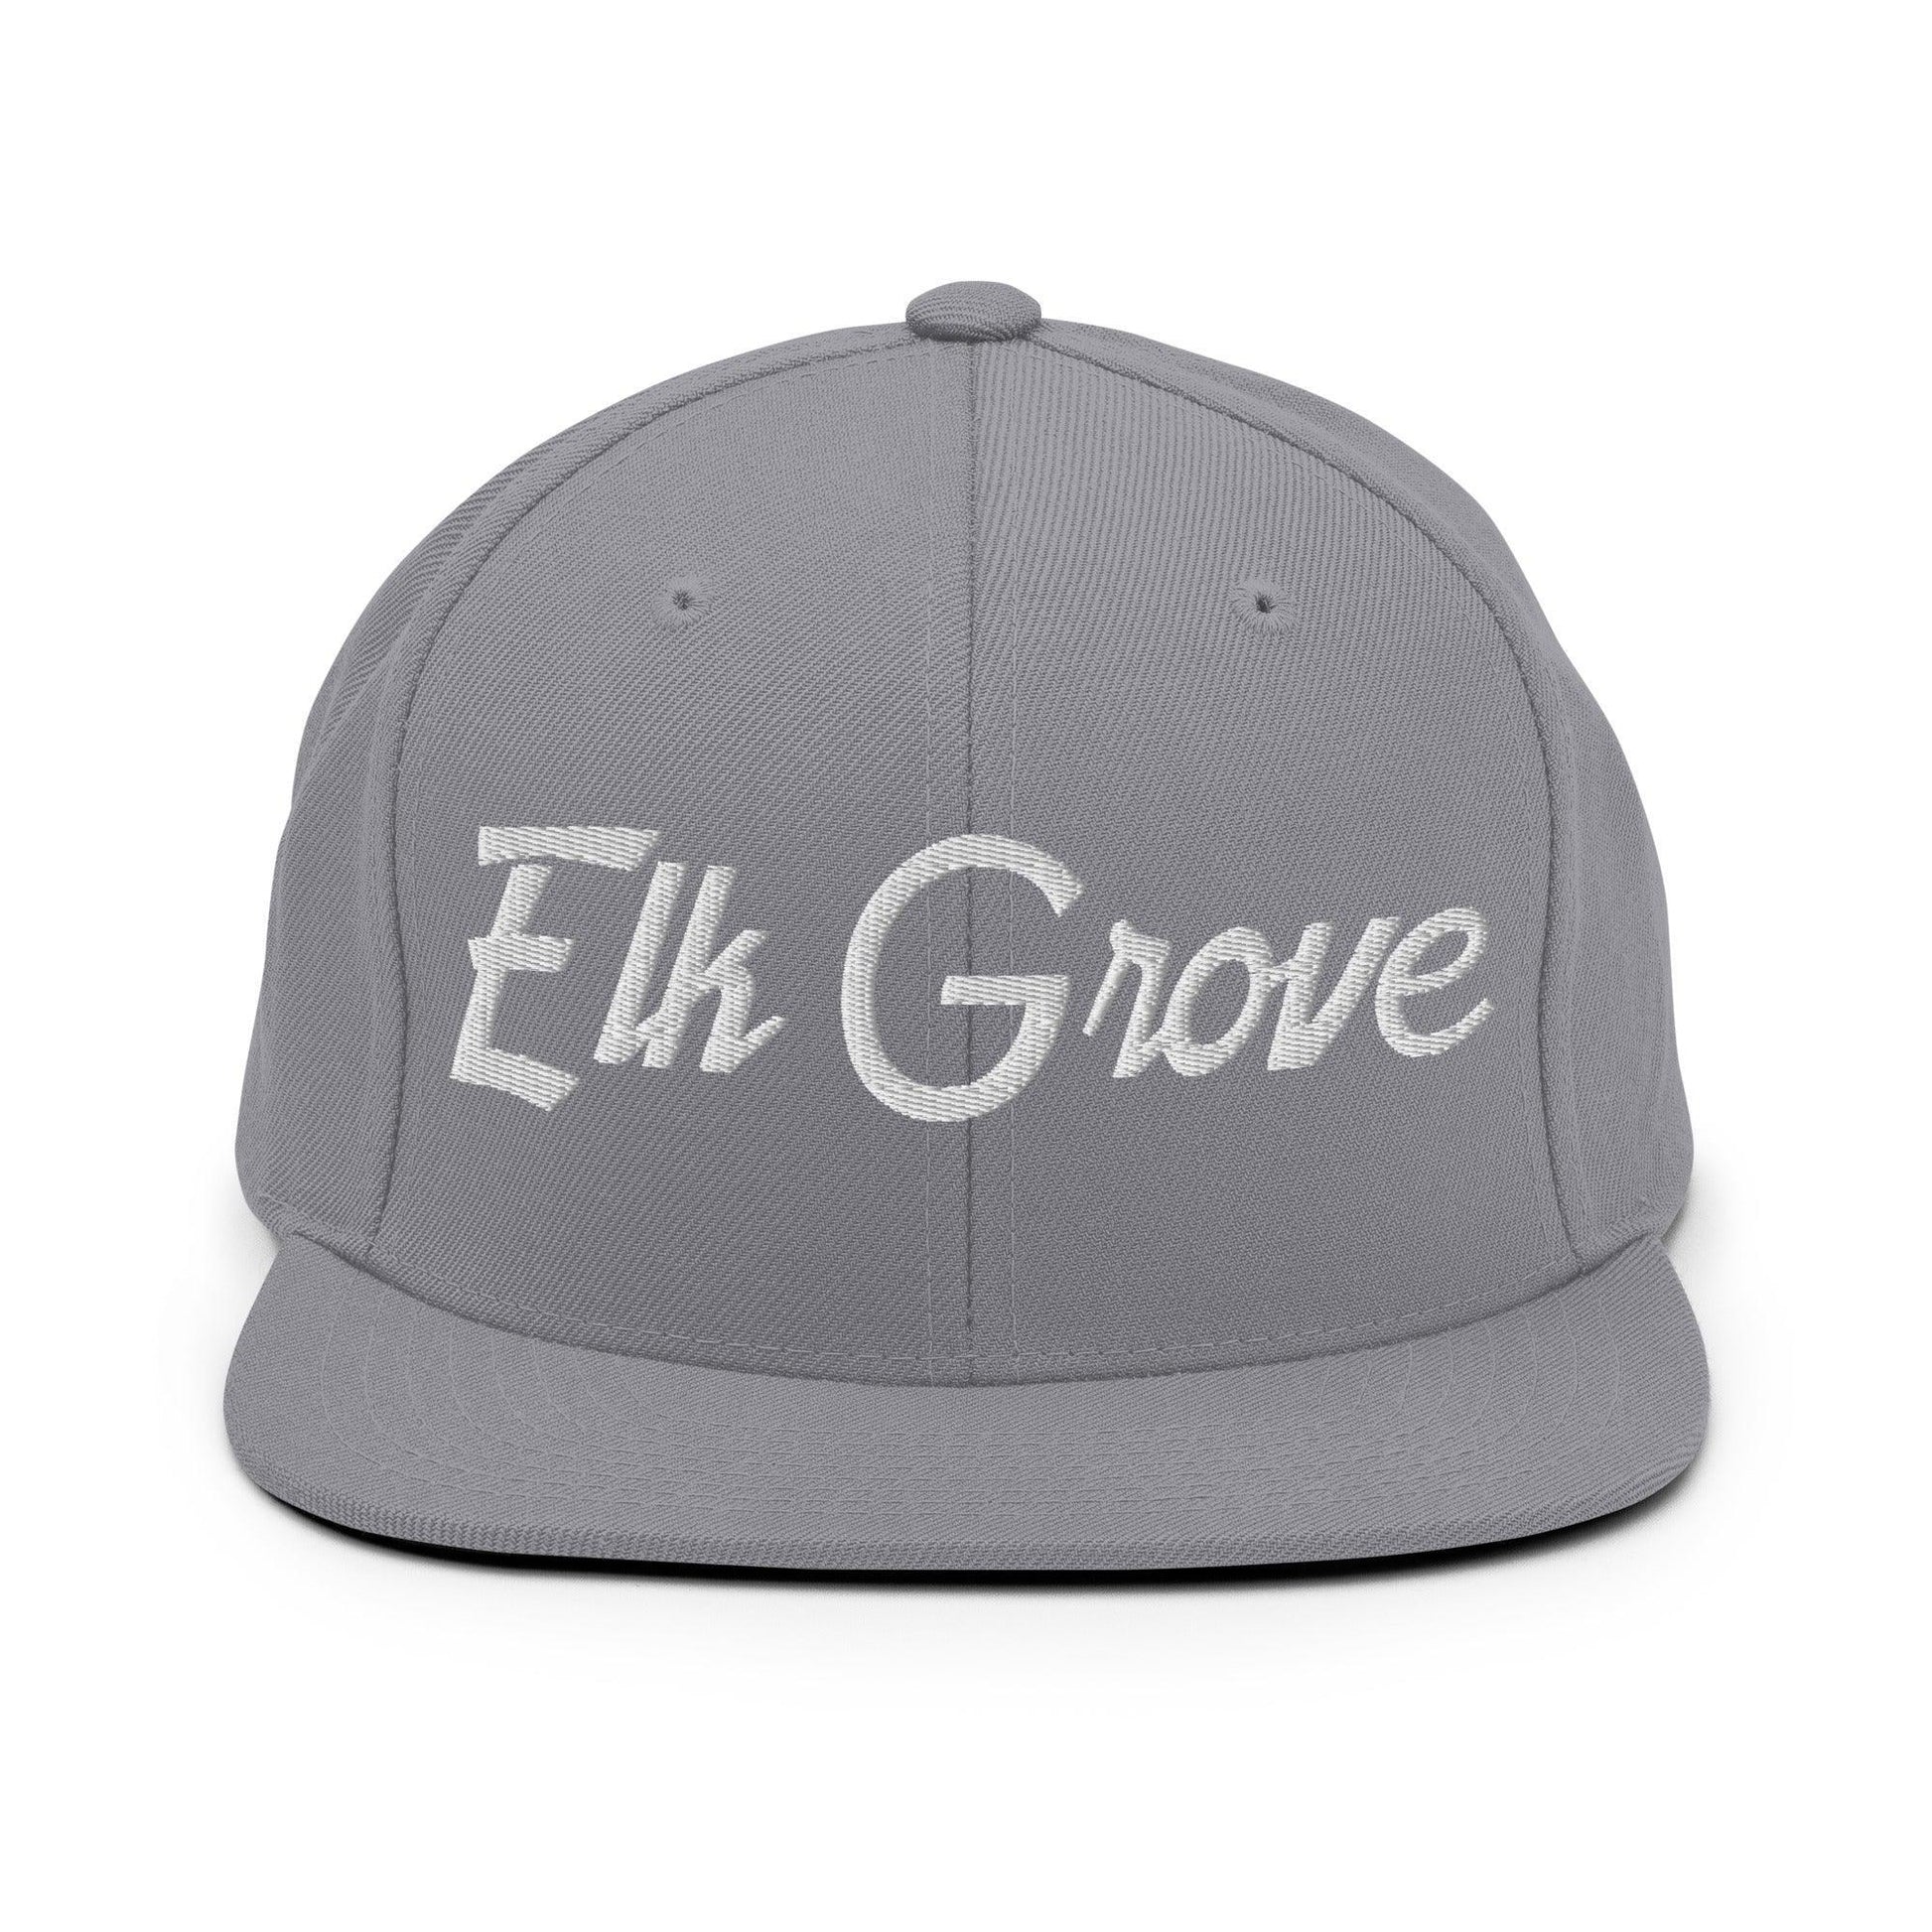 Elk Grove Script Snapback Hat Silver